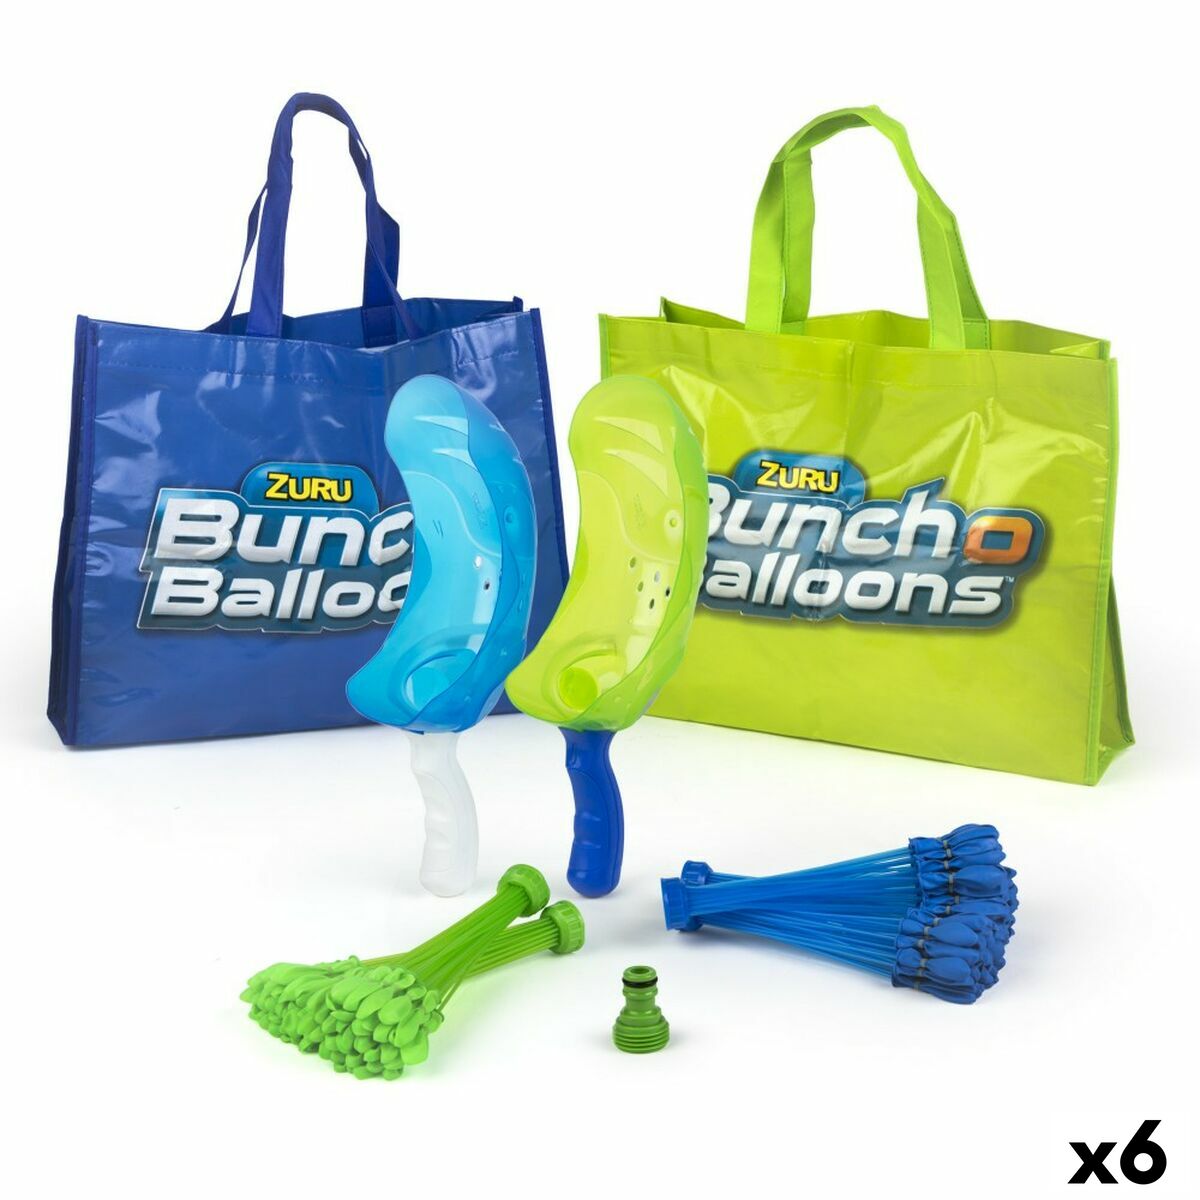 Palloncini d'Acqua Zuru Bunch-O-Balloons Lanciatore 2 Giocatori 6 Unità - Disponibile in 3-4 giorni lavorativi